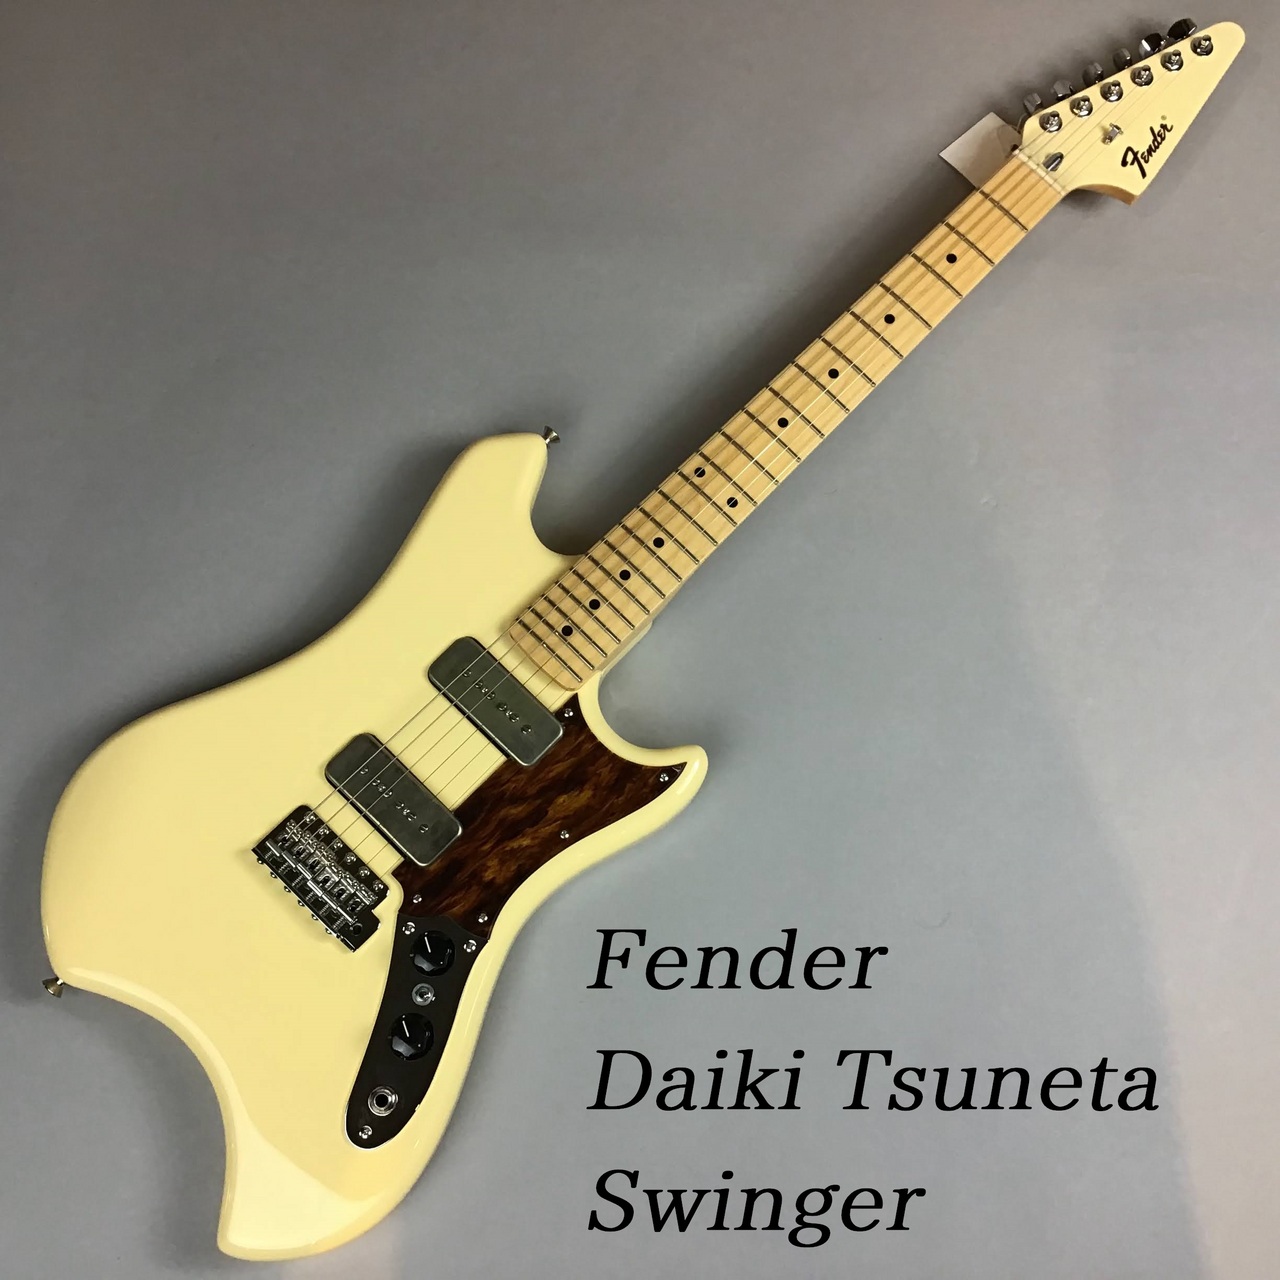 FENDER Daiki Tsuneta Swinger 常田大希シグネイチャー - ギター